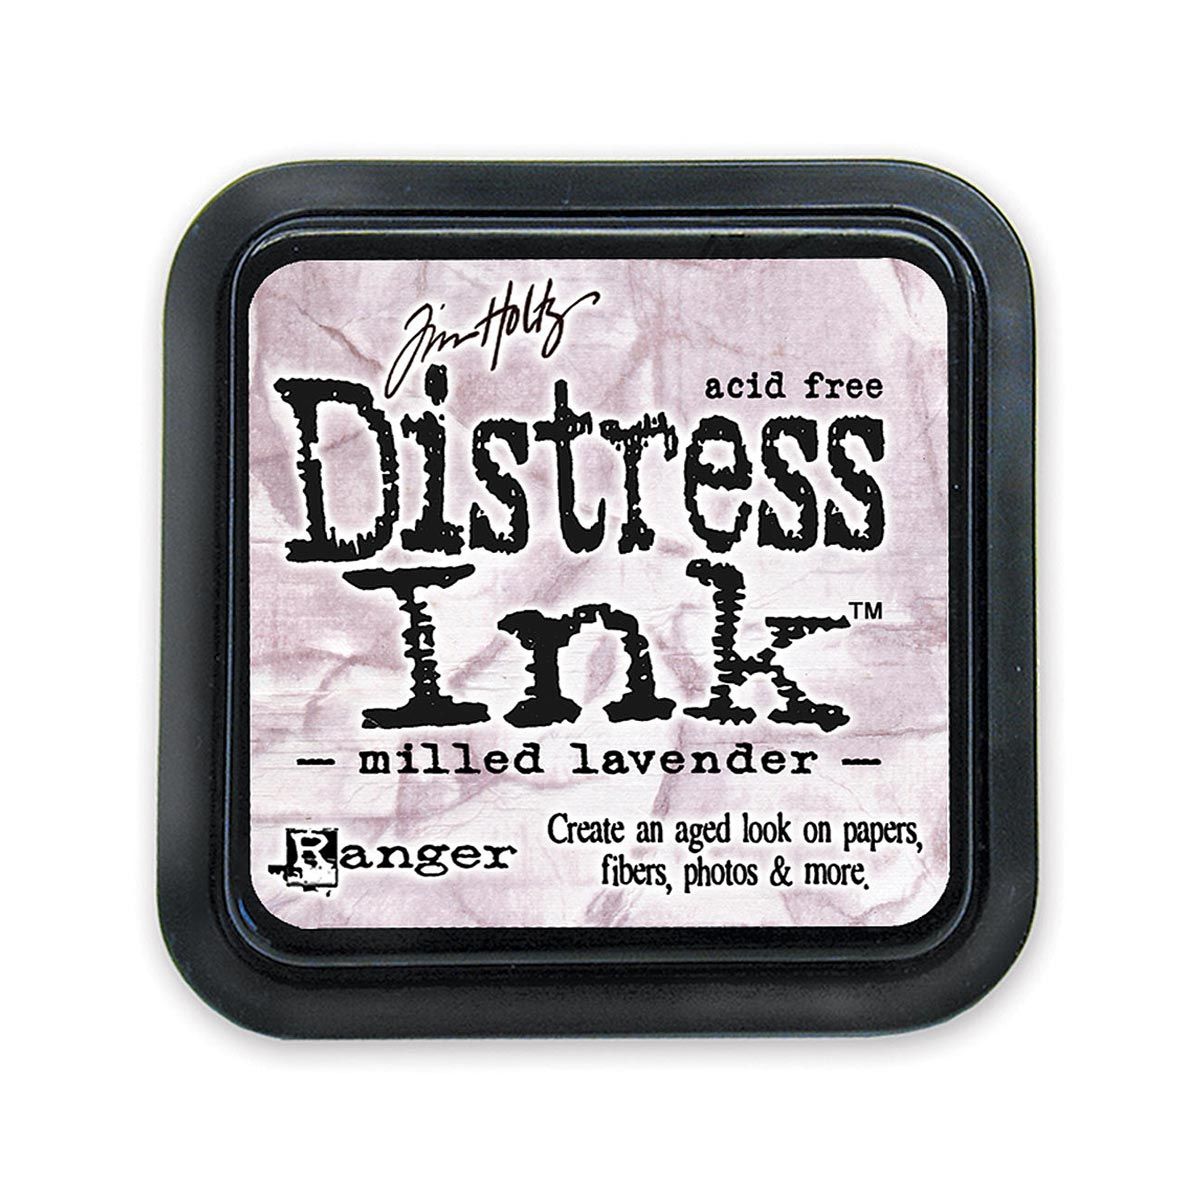 Tim Holtz Mini Distress Ink Pad Milled Lavender 1x1 inch